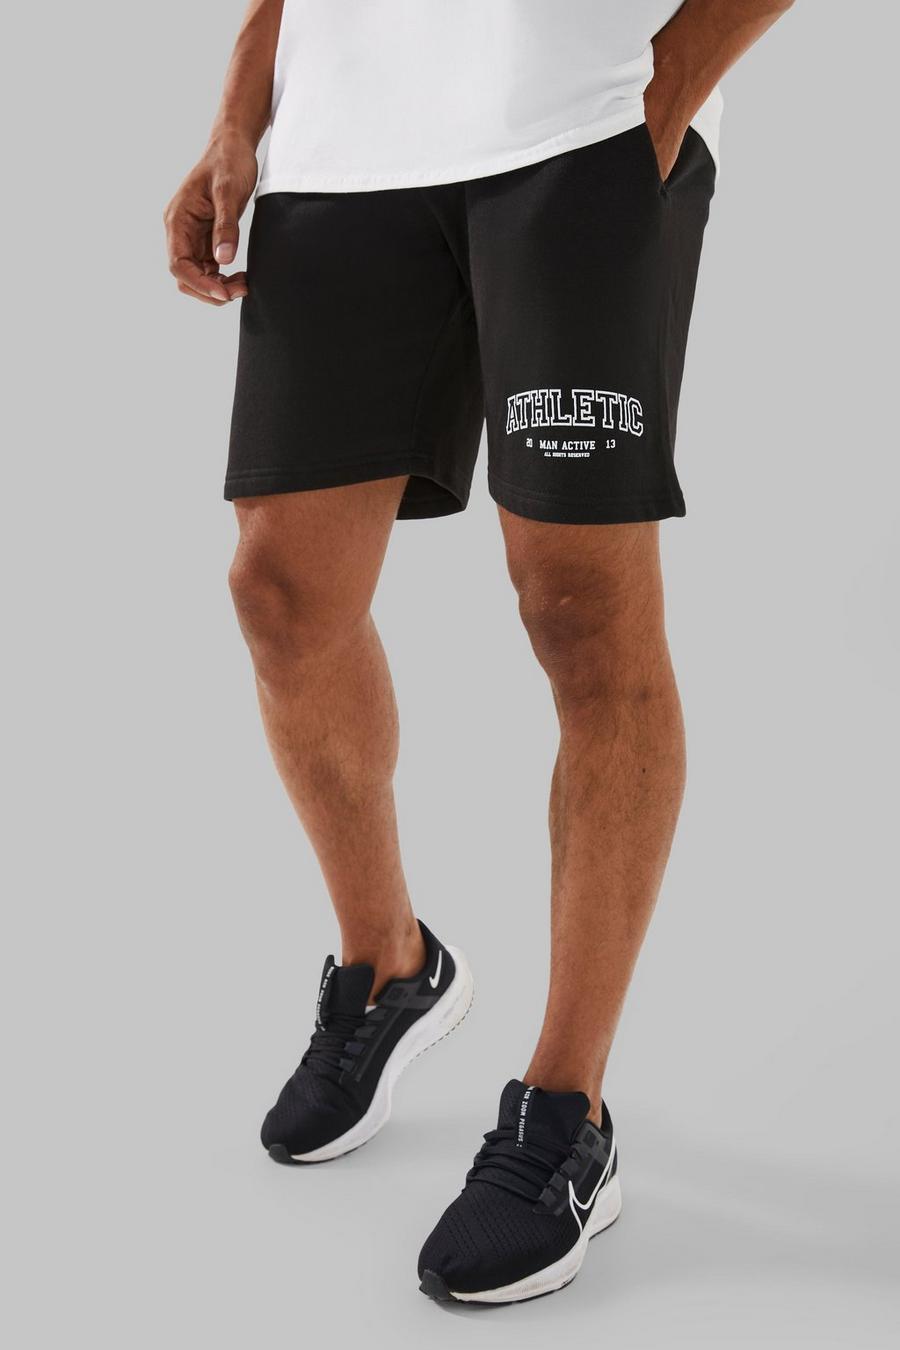 Man Active Athletic Shorts, Black noir